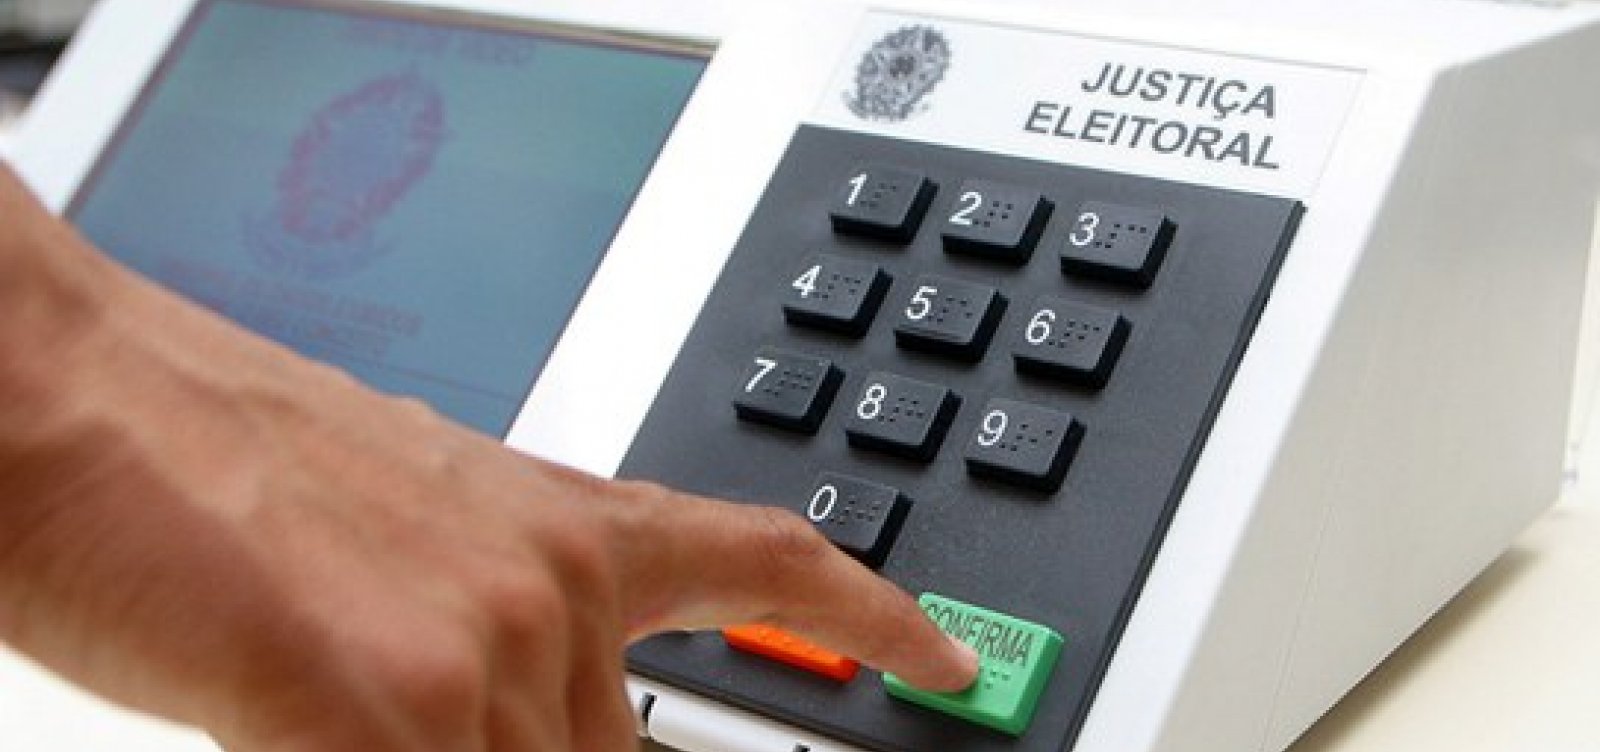 Eleições municipais: Das candidaturas registradas na Bahia, mais da metade é de homens